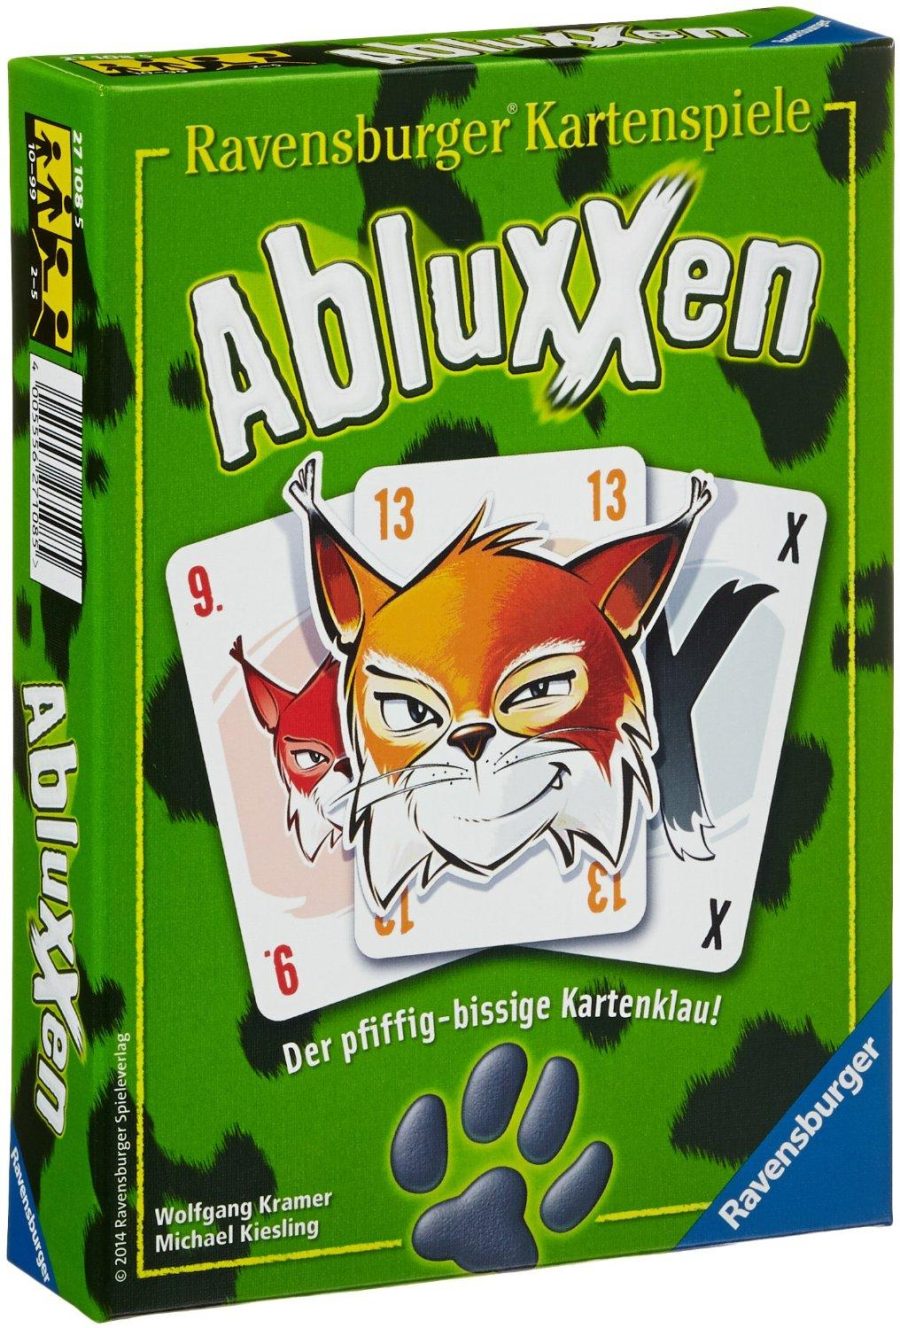 Abluxxen Spielanleitung - PDF Download